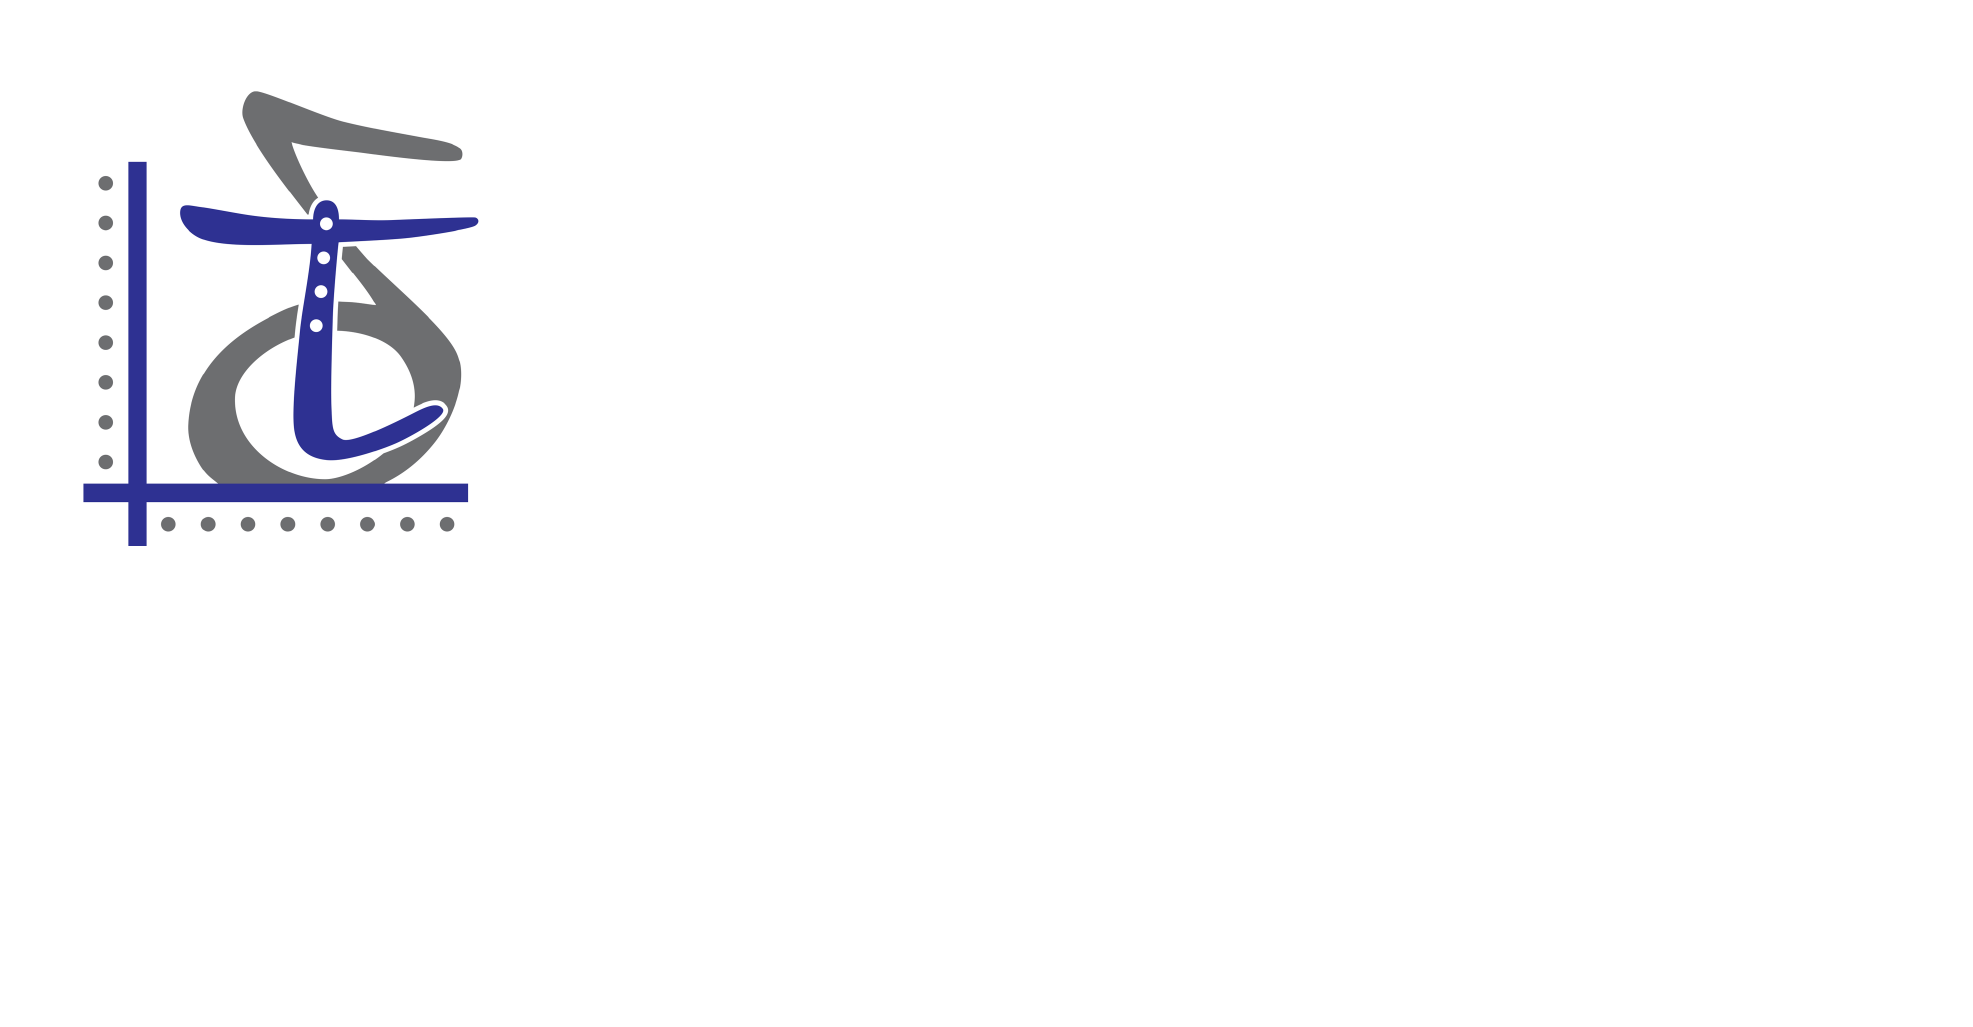 Μετάβαση από το λογότυπο που ηταν σε χρηση απο το 1994 μέχρι το 2020 στο καινούριο λογότυπο.